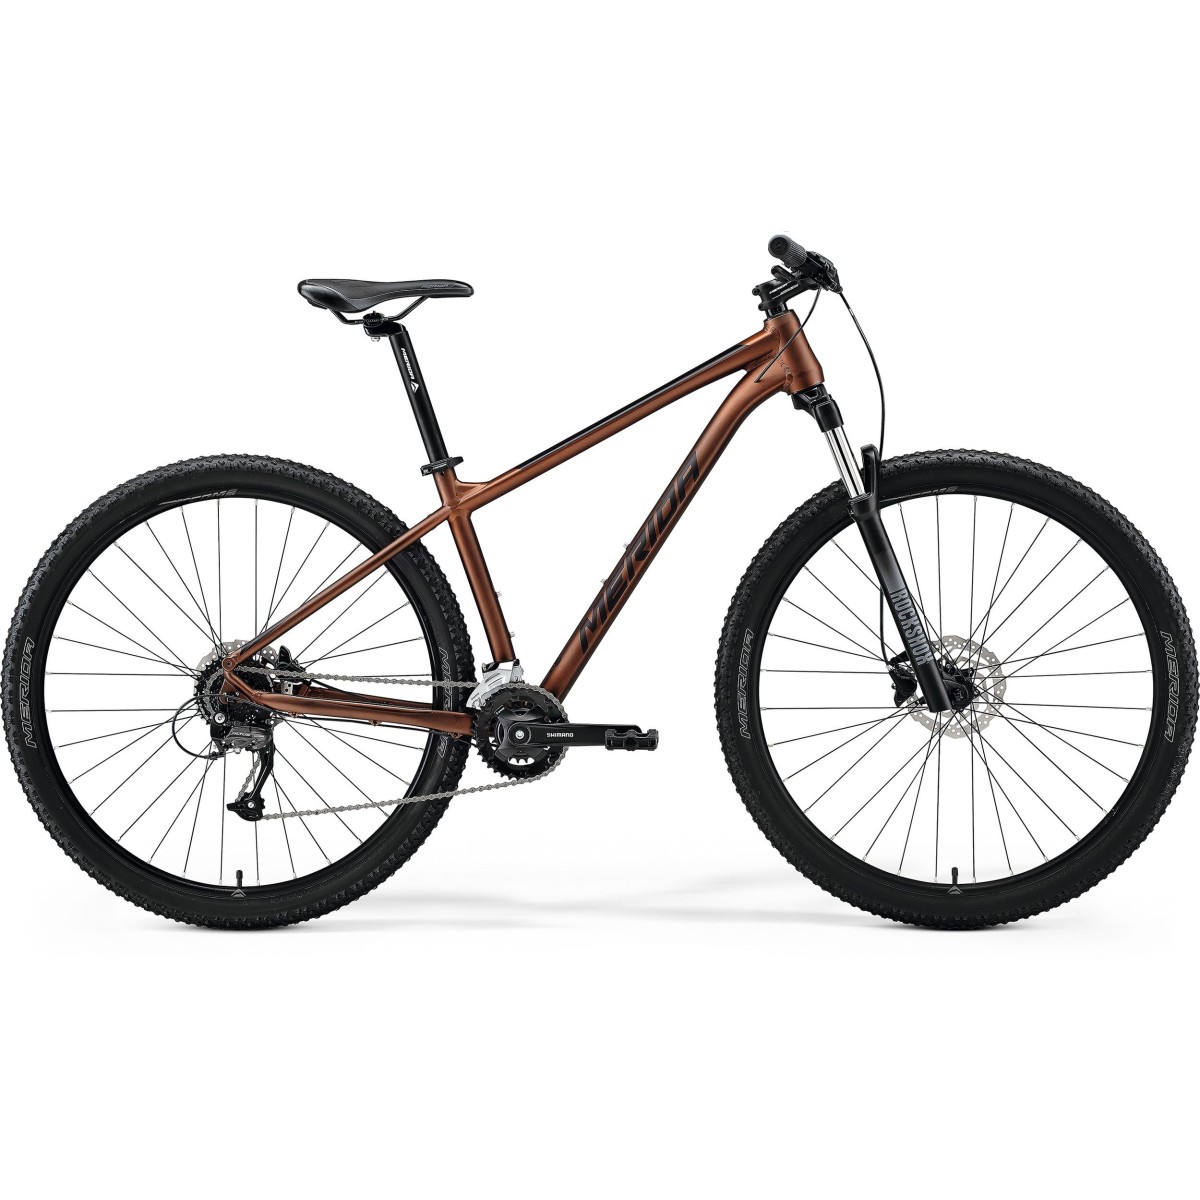 MERIDA BIG NINE 60-2X bicycle - brown